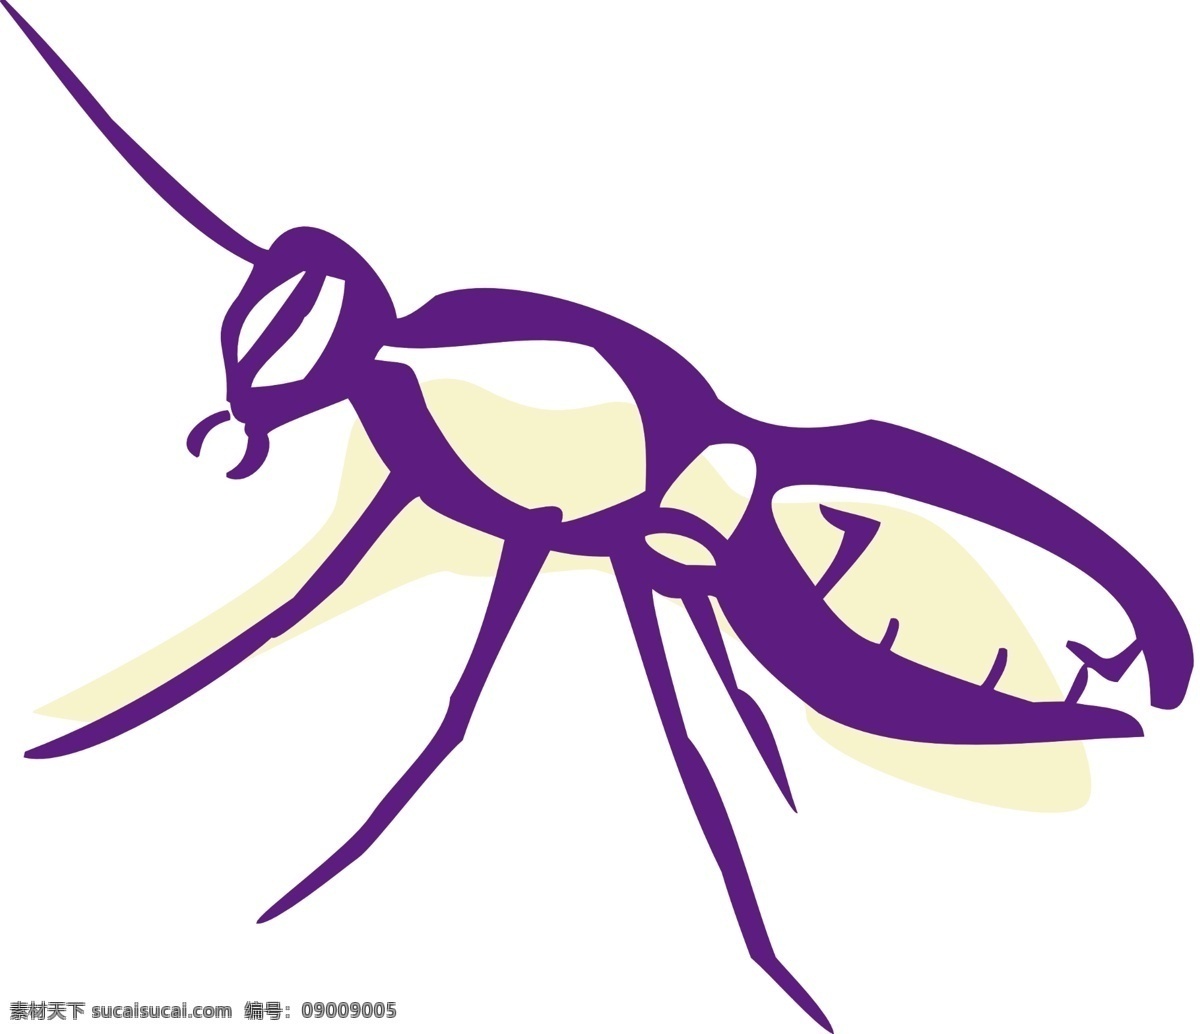 蚂蚁 动漫动画 线描 昆虫线条 昆虫特写 昆虫造型 昆虫线条轮廓 昆虫轮廓 生物世界